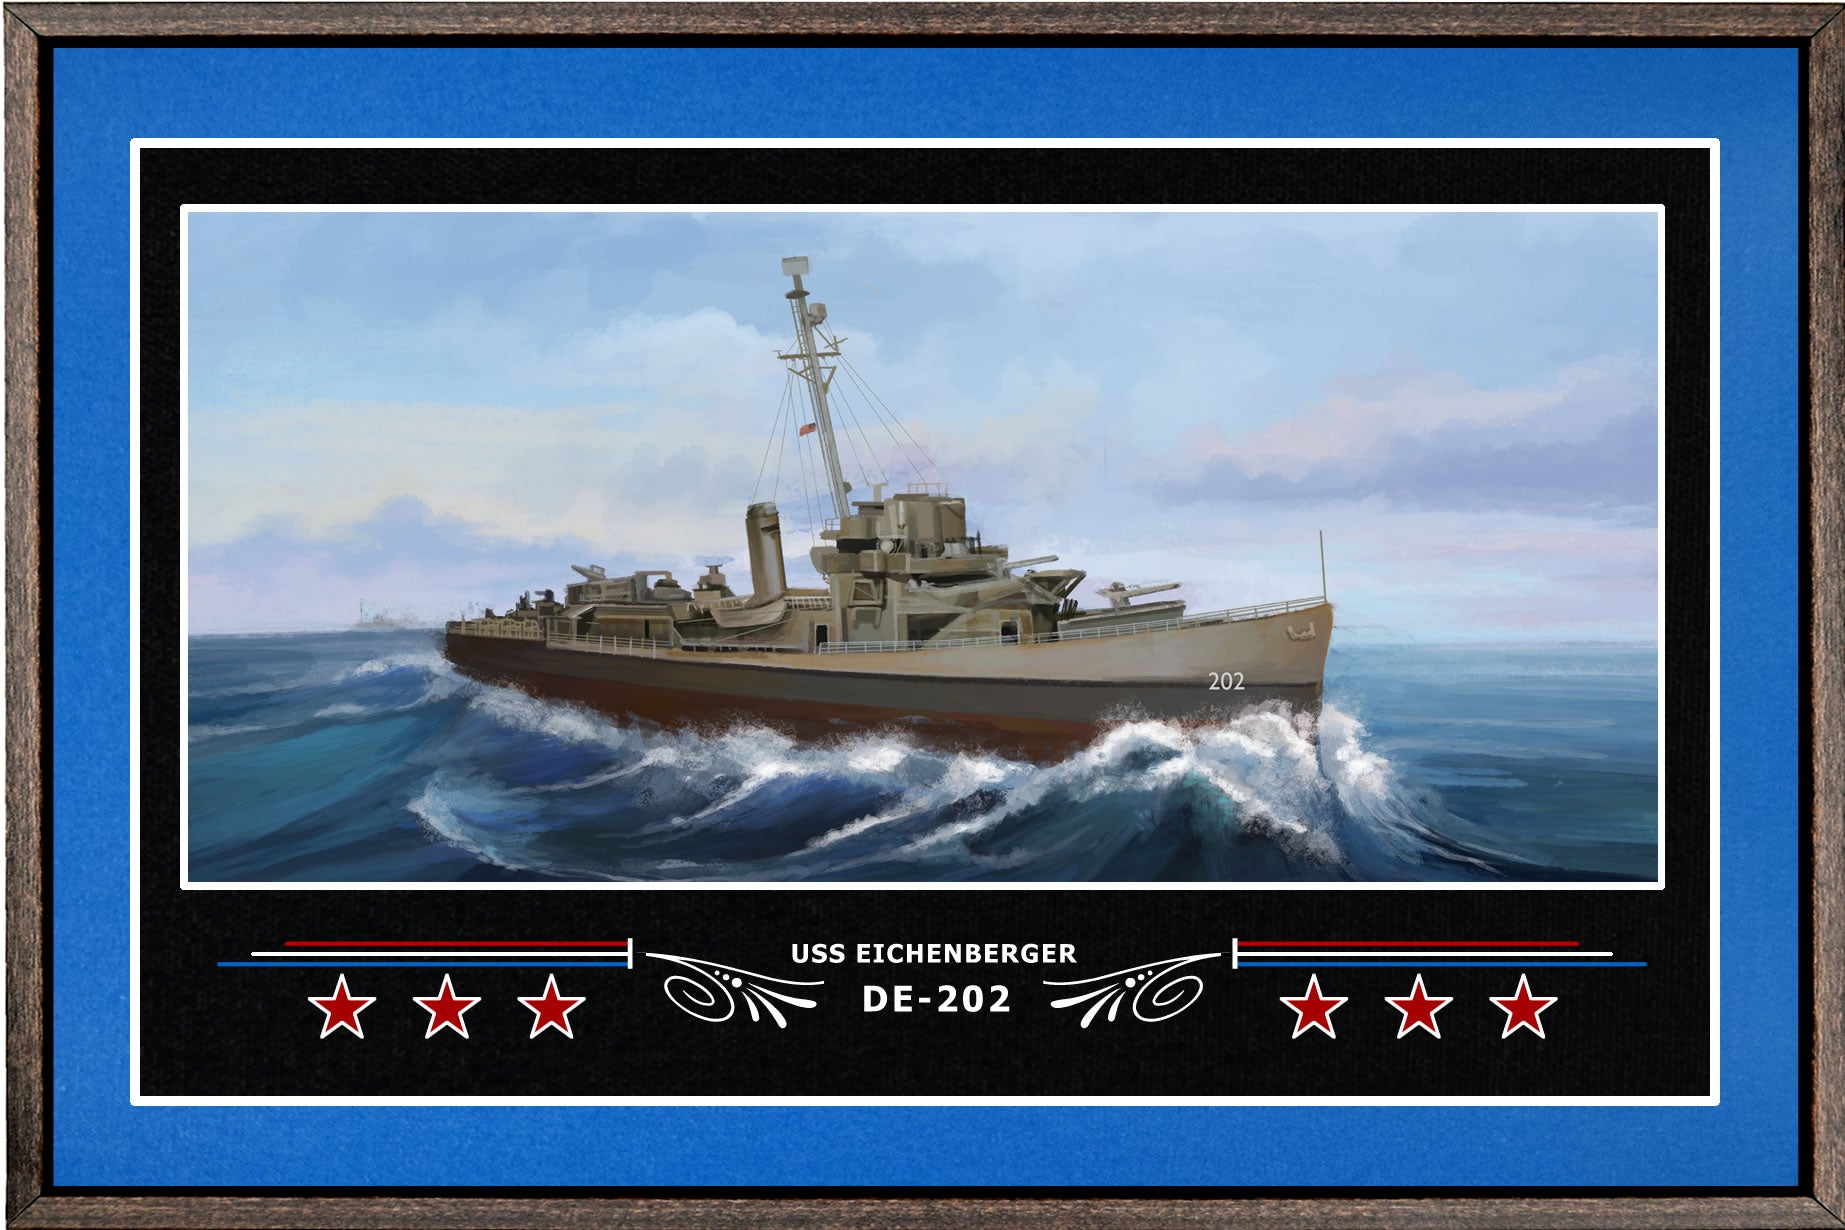 USS EICHENBERGER DE 202 BOX FRAMED CANVAS ART BLUE